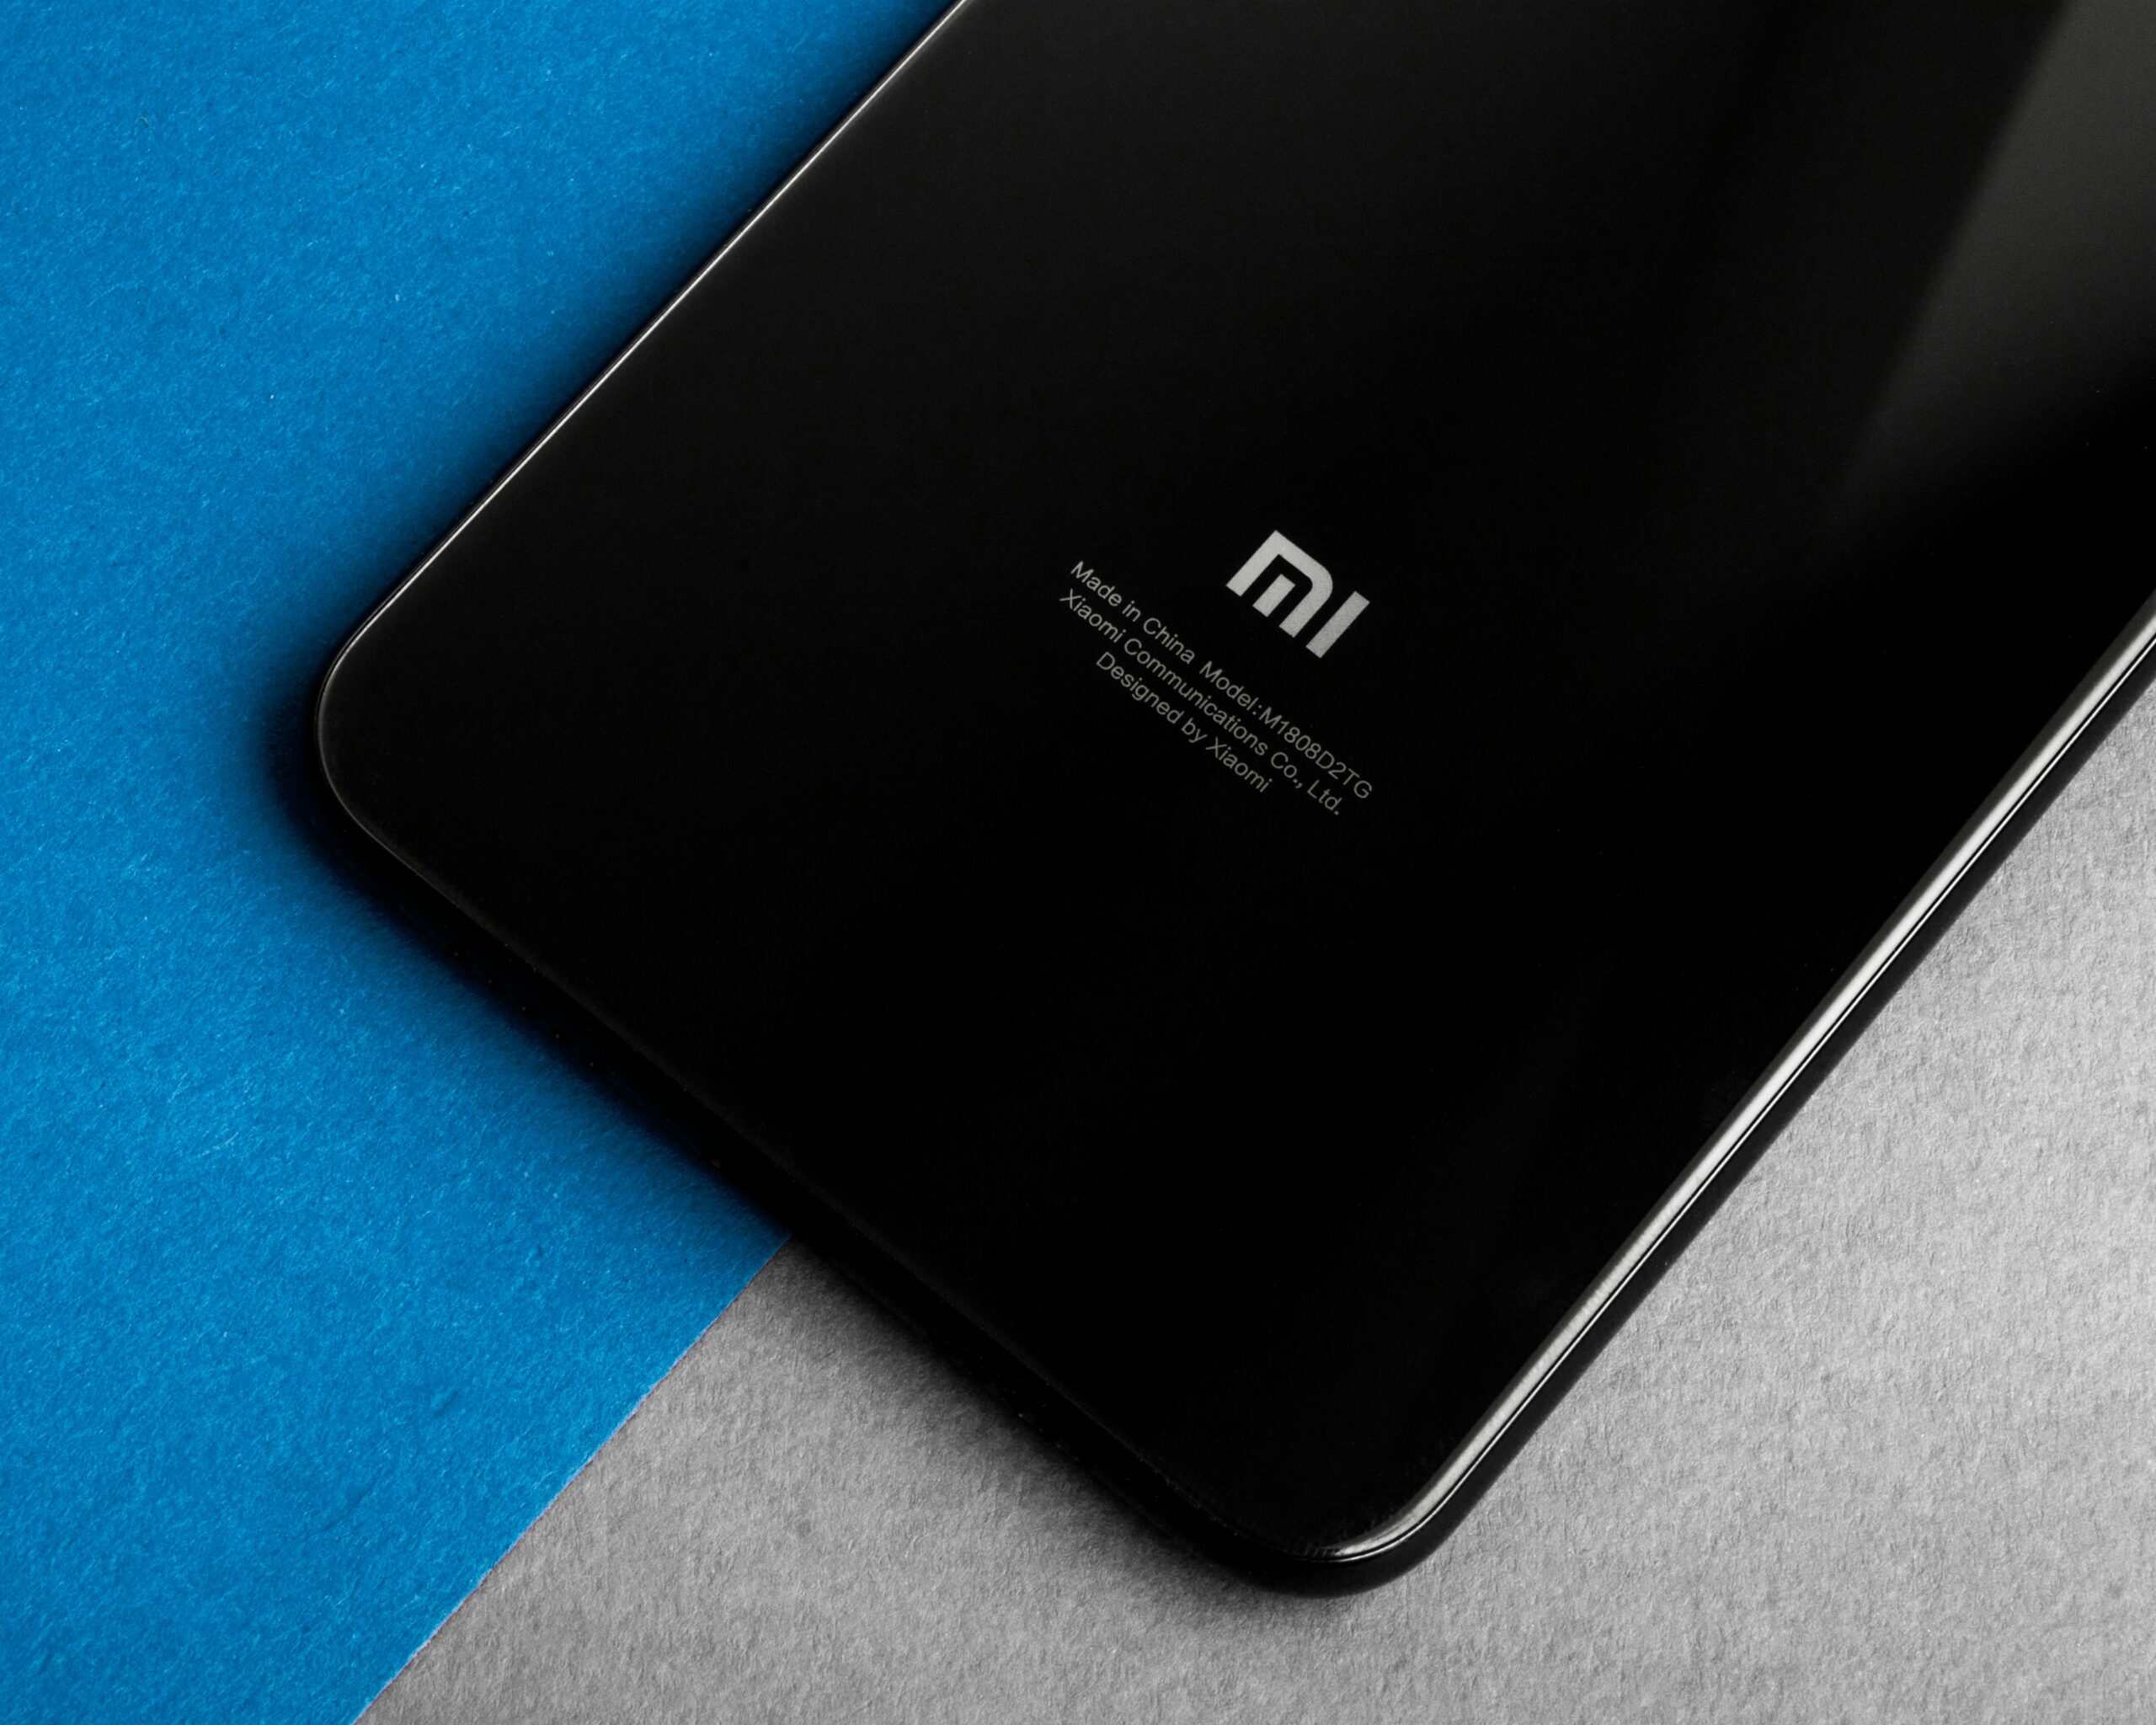 Częściowy widok czarnego smartfona Xiaomi z logo i napisami na tylnej obudowie, położonego na skos na dwóch powierzchniach - niebieskiej i szarej.